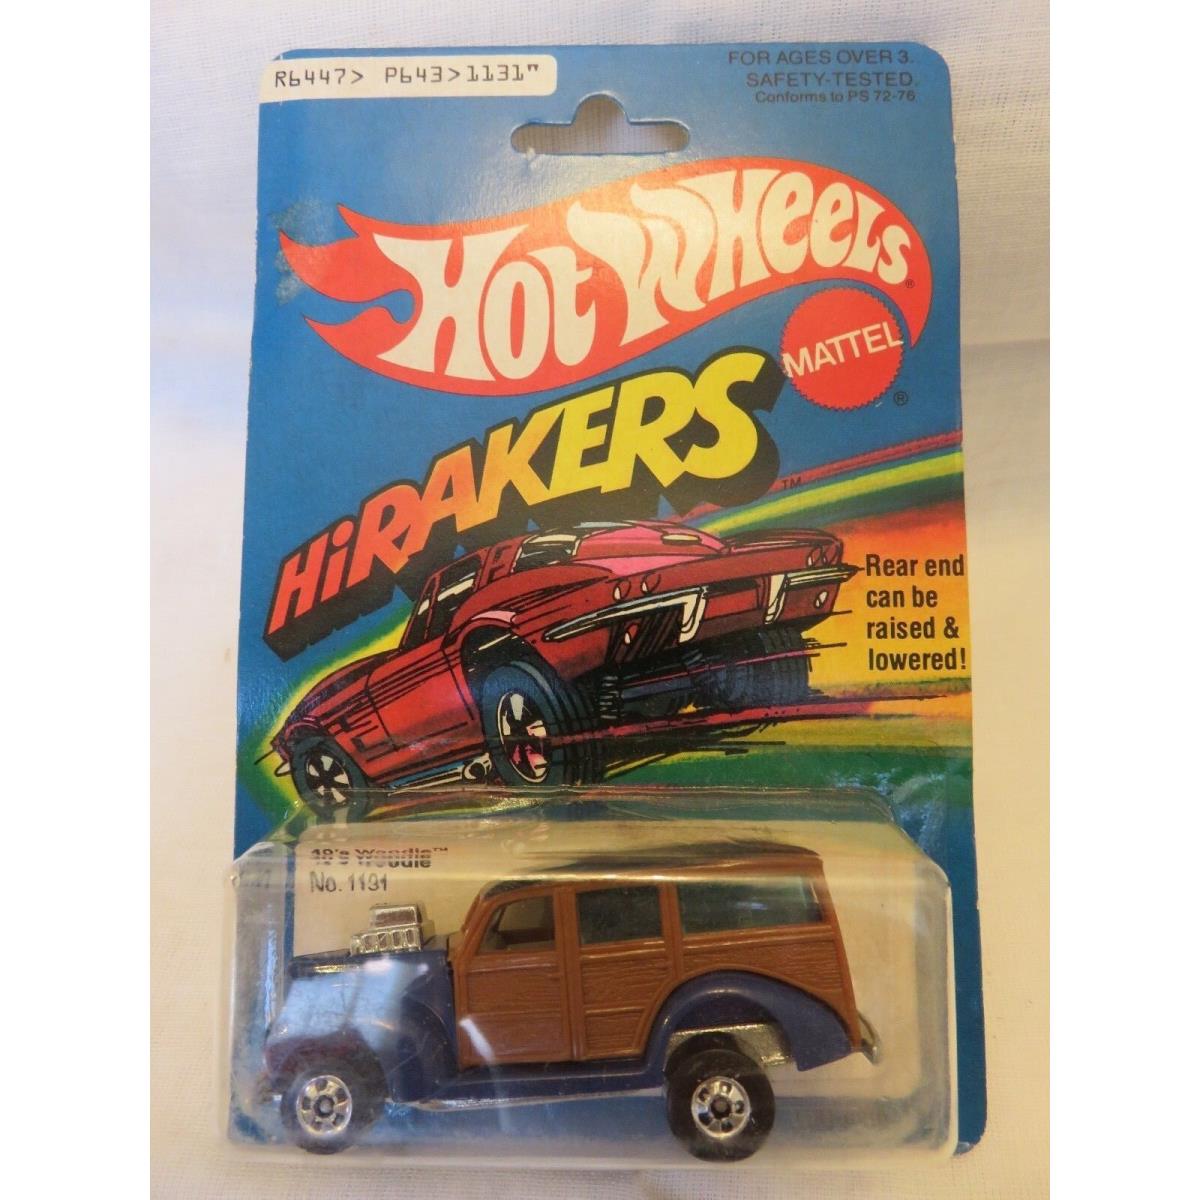 1979 Vintage Hot Wheels 40`s Woodie Hirakers Die-cast Car A